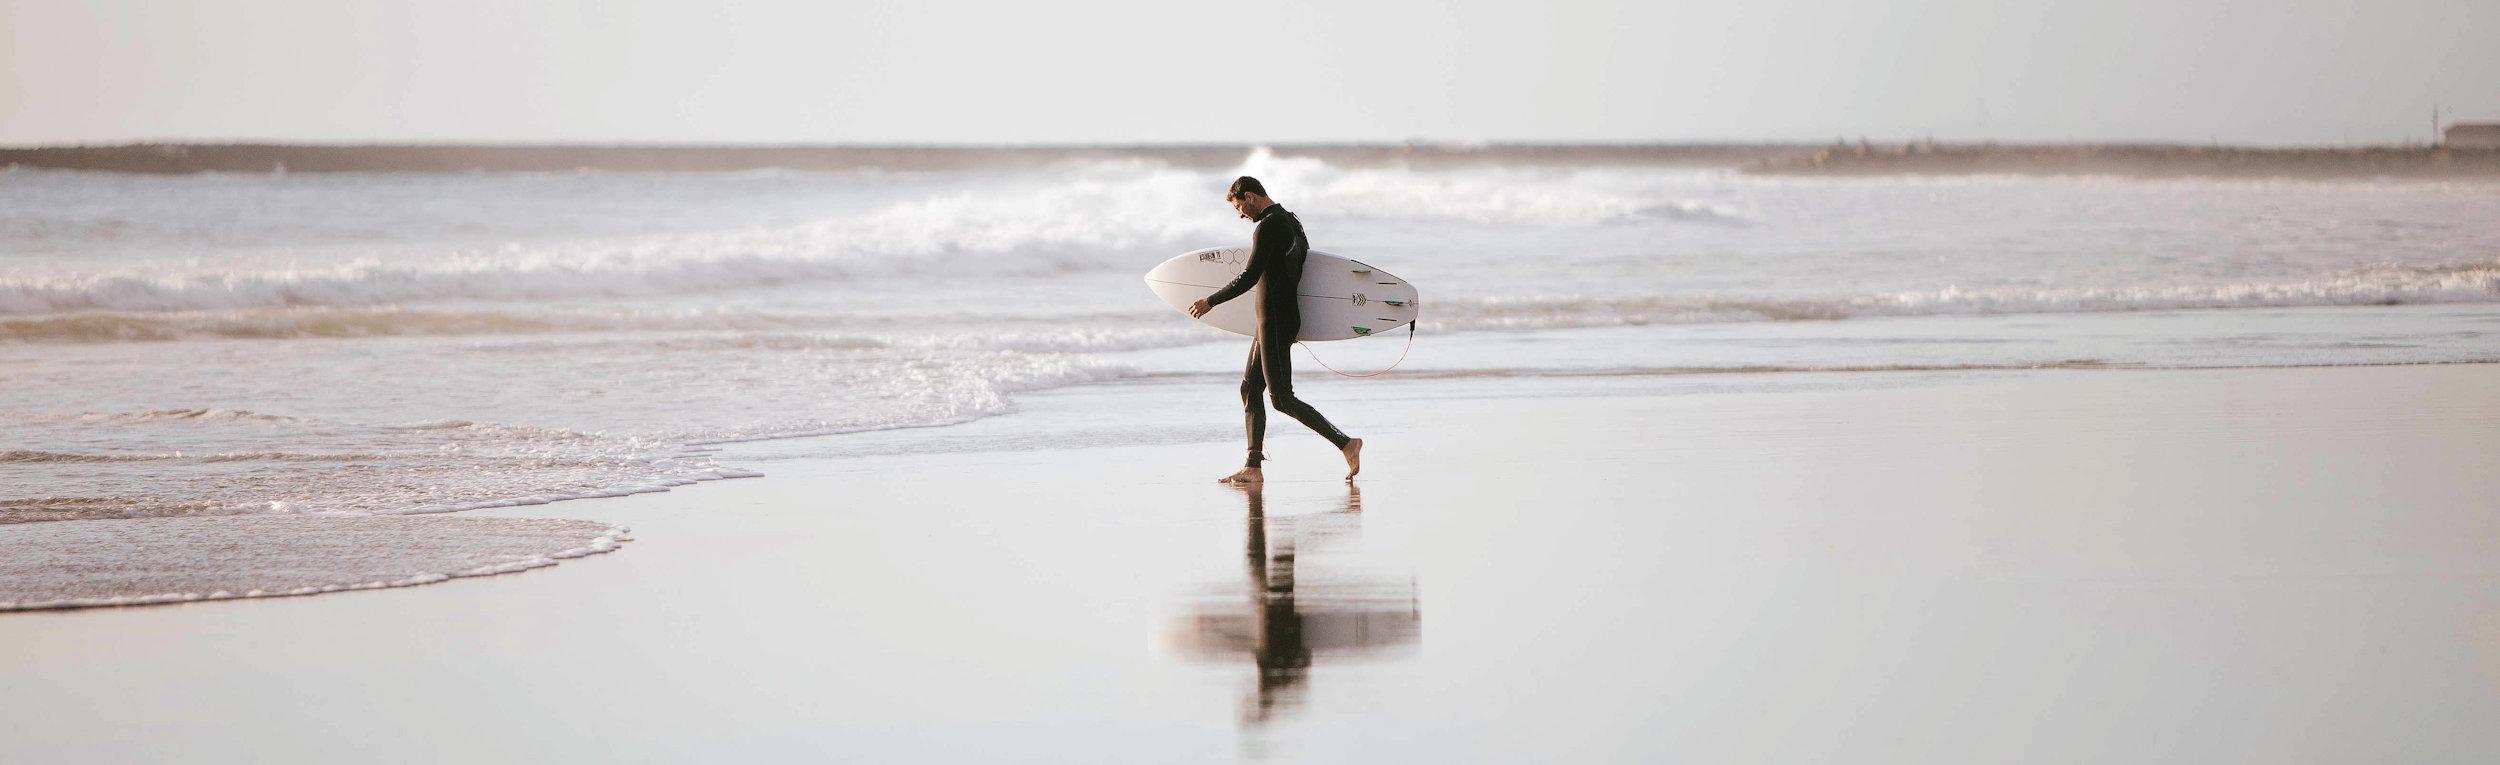 Man beach surfer sea